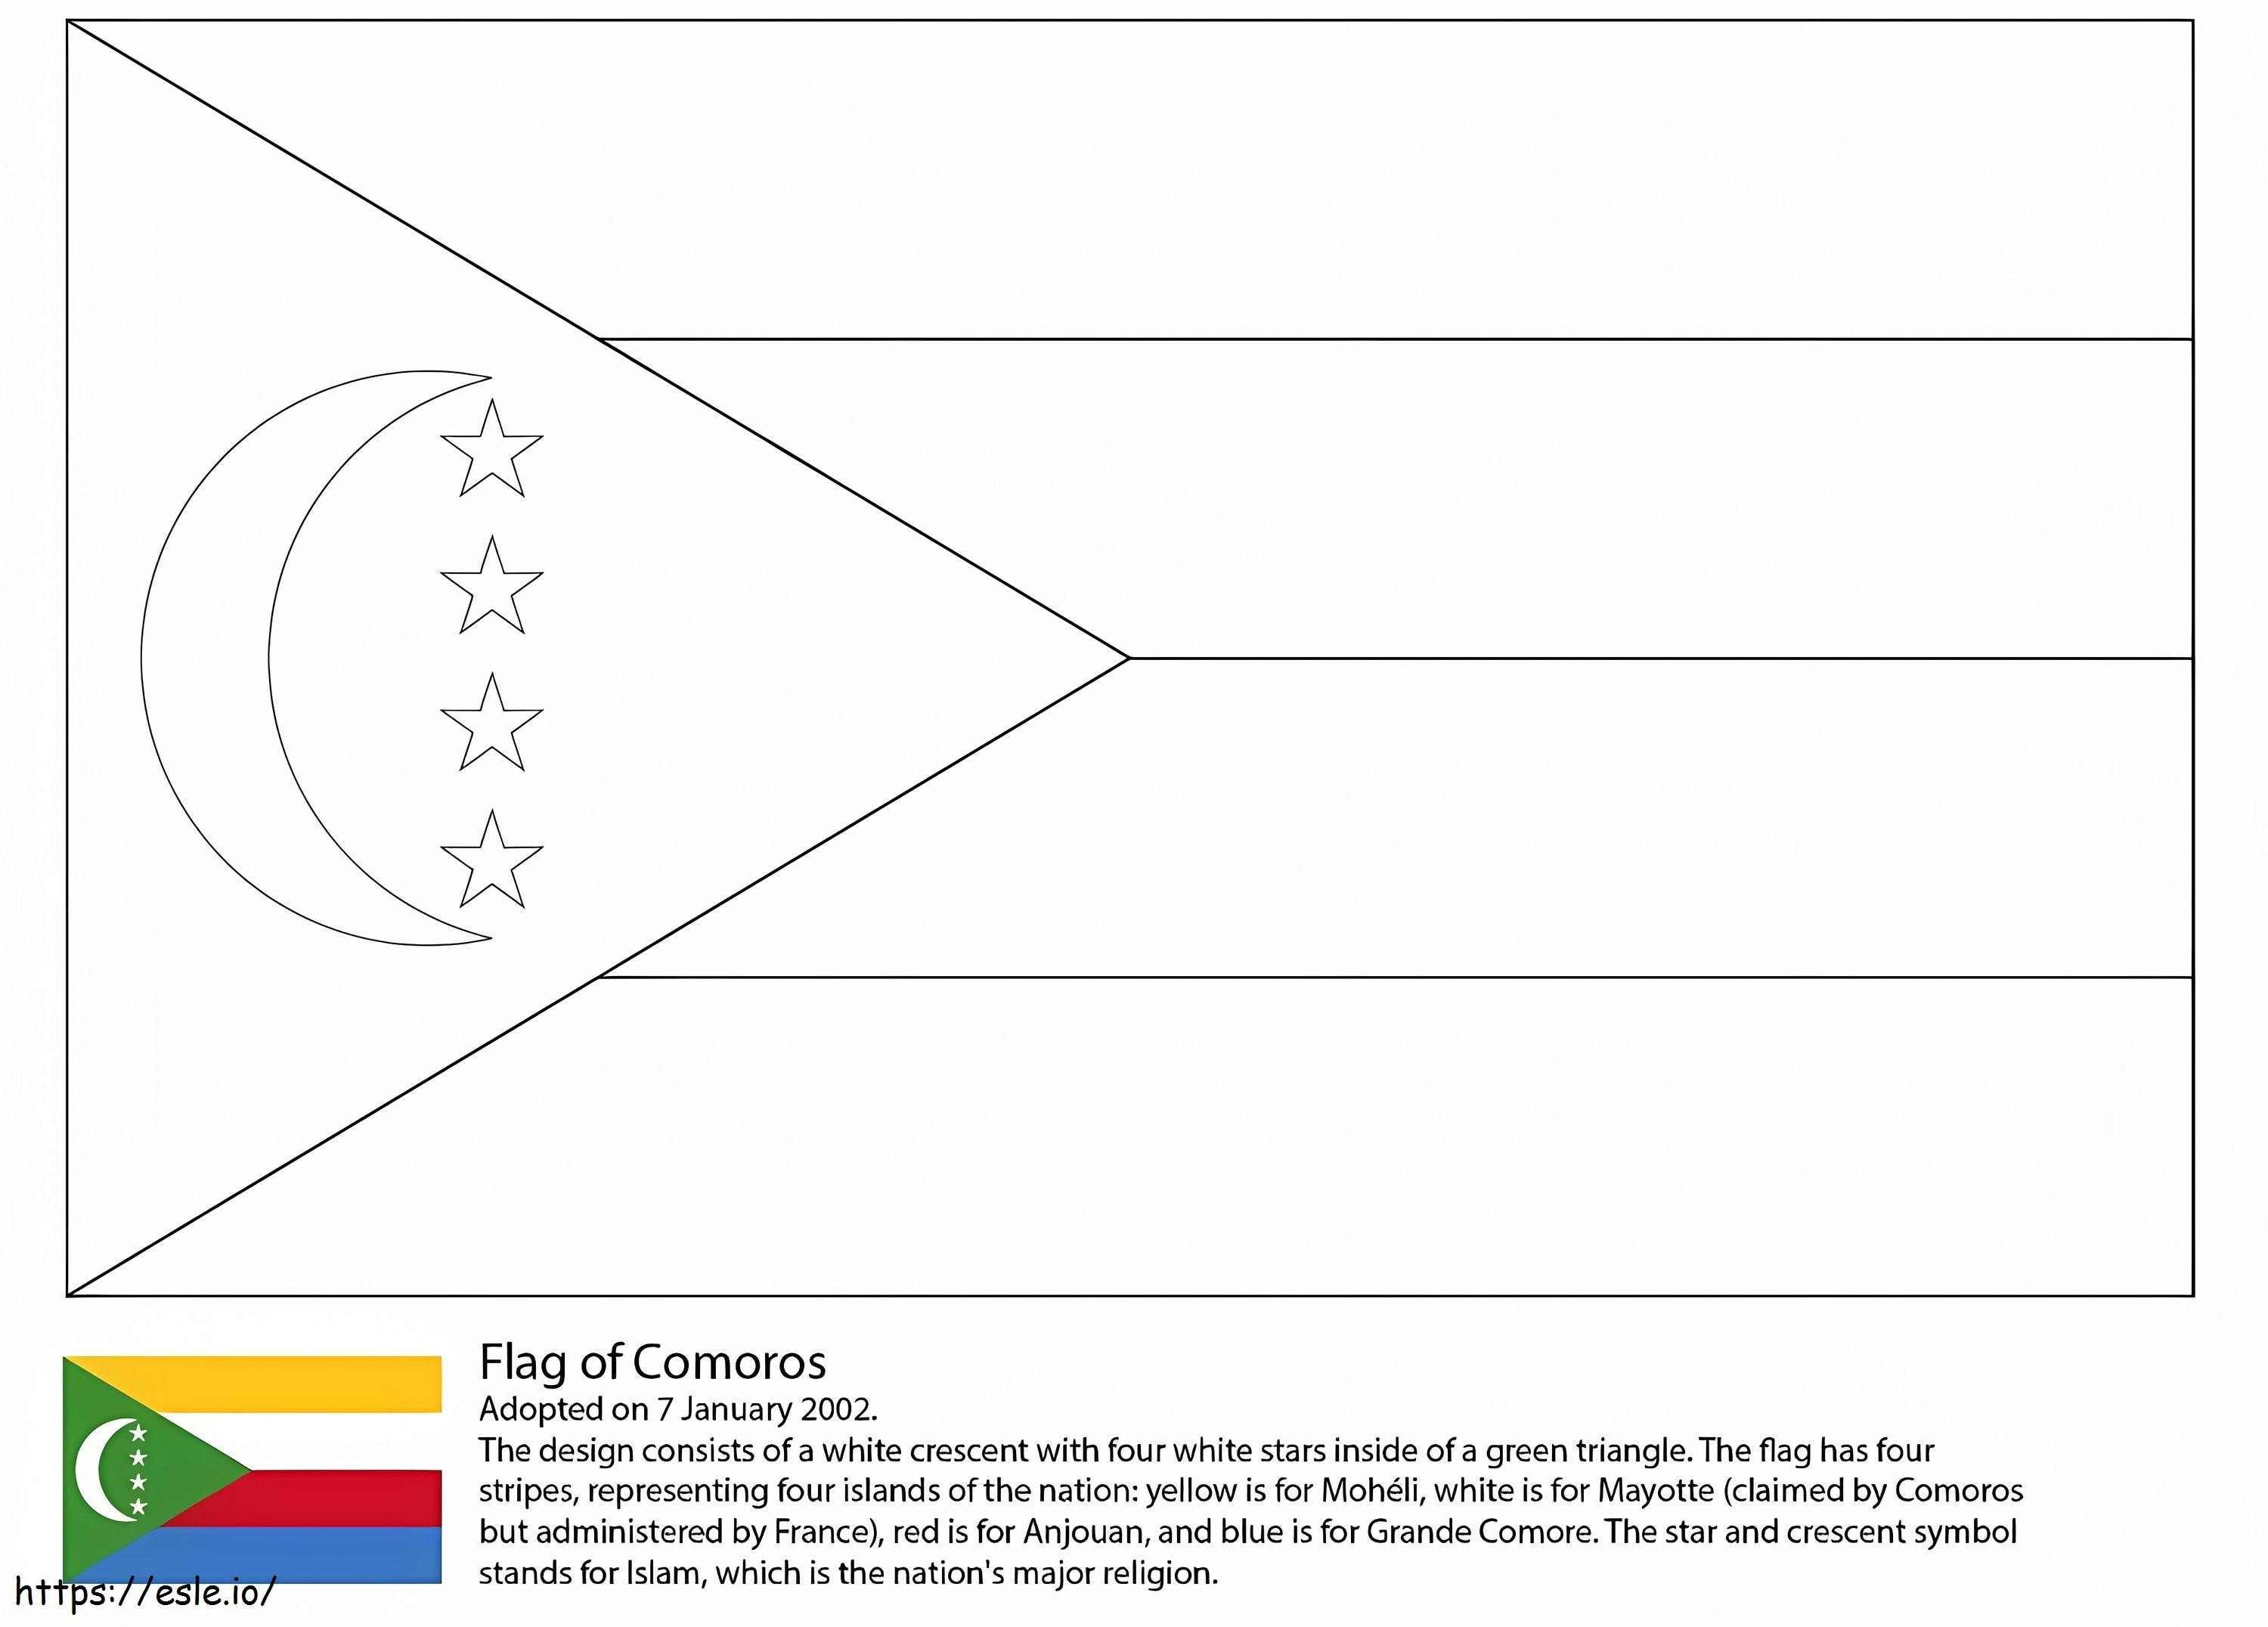  Bandiera Delle Comore da colorare